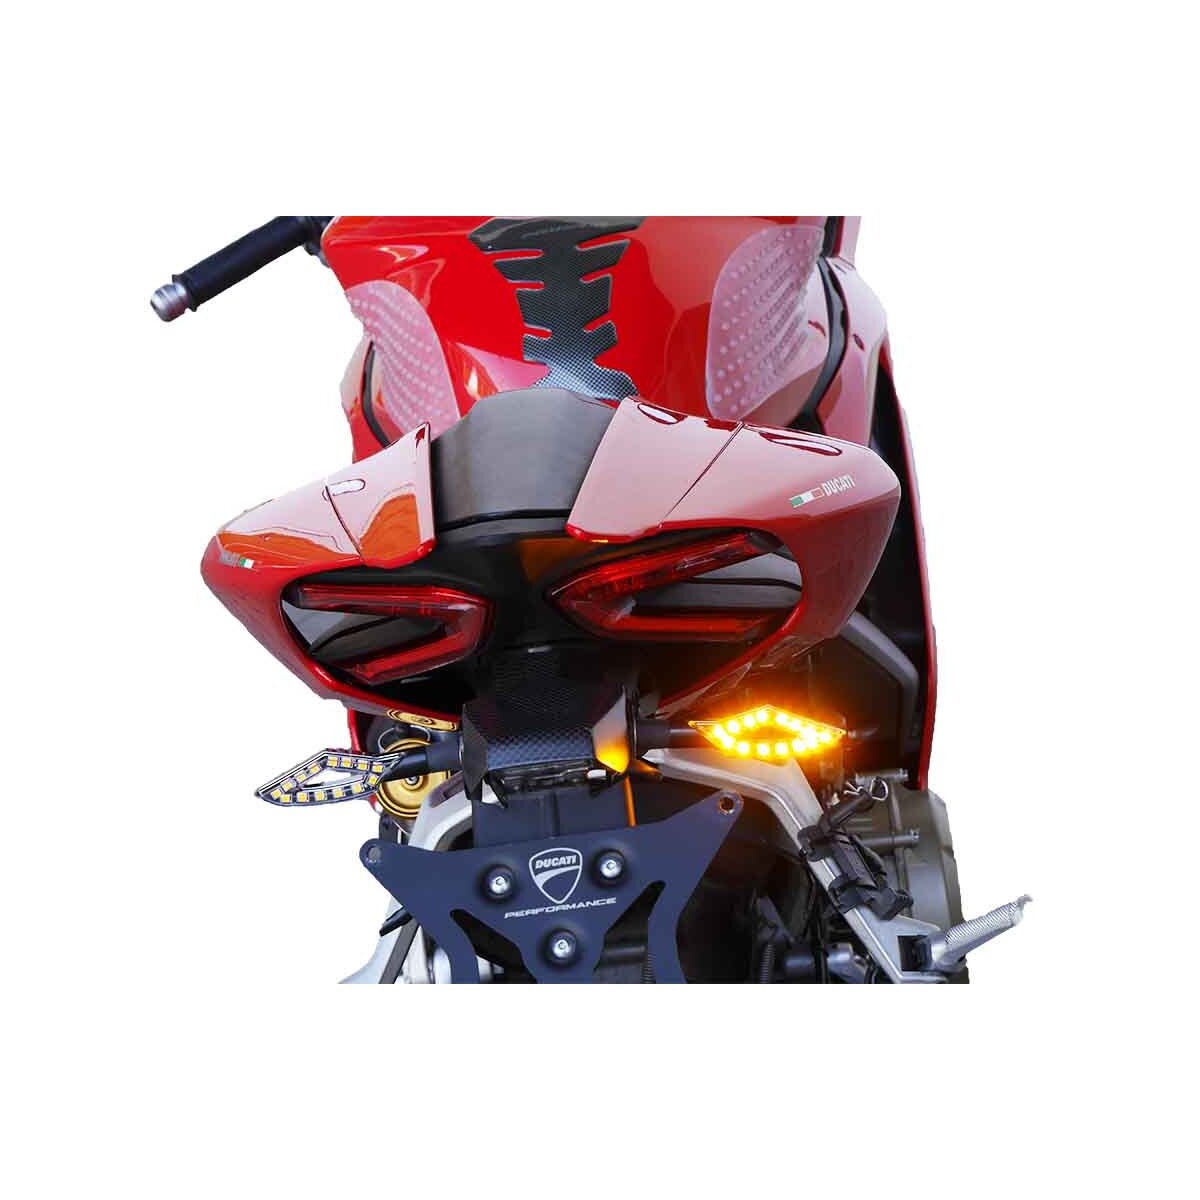 JMTBNO Motorrad LED Blinker E geprüft 4 Stück Blinker Licht Mini